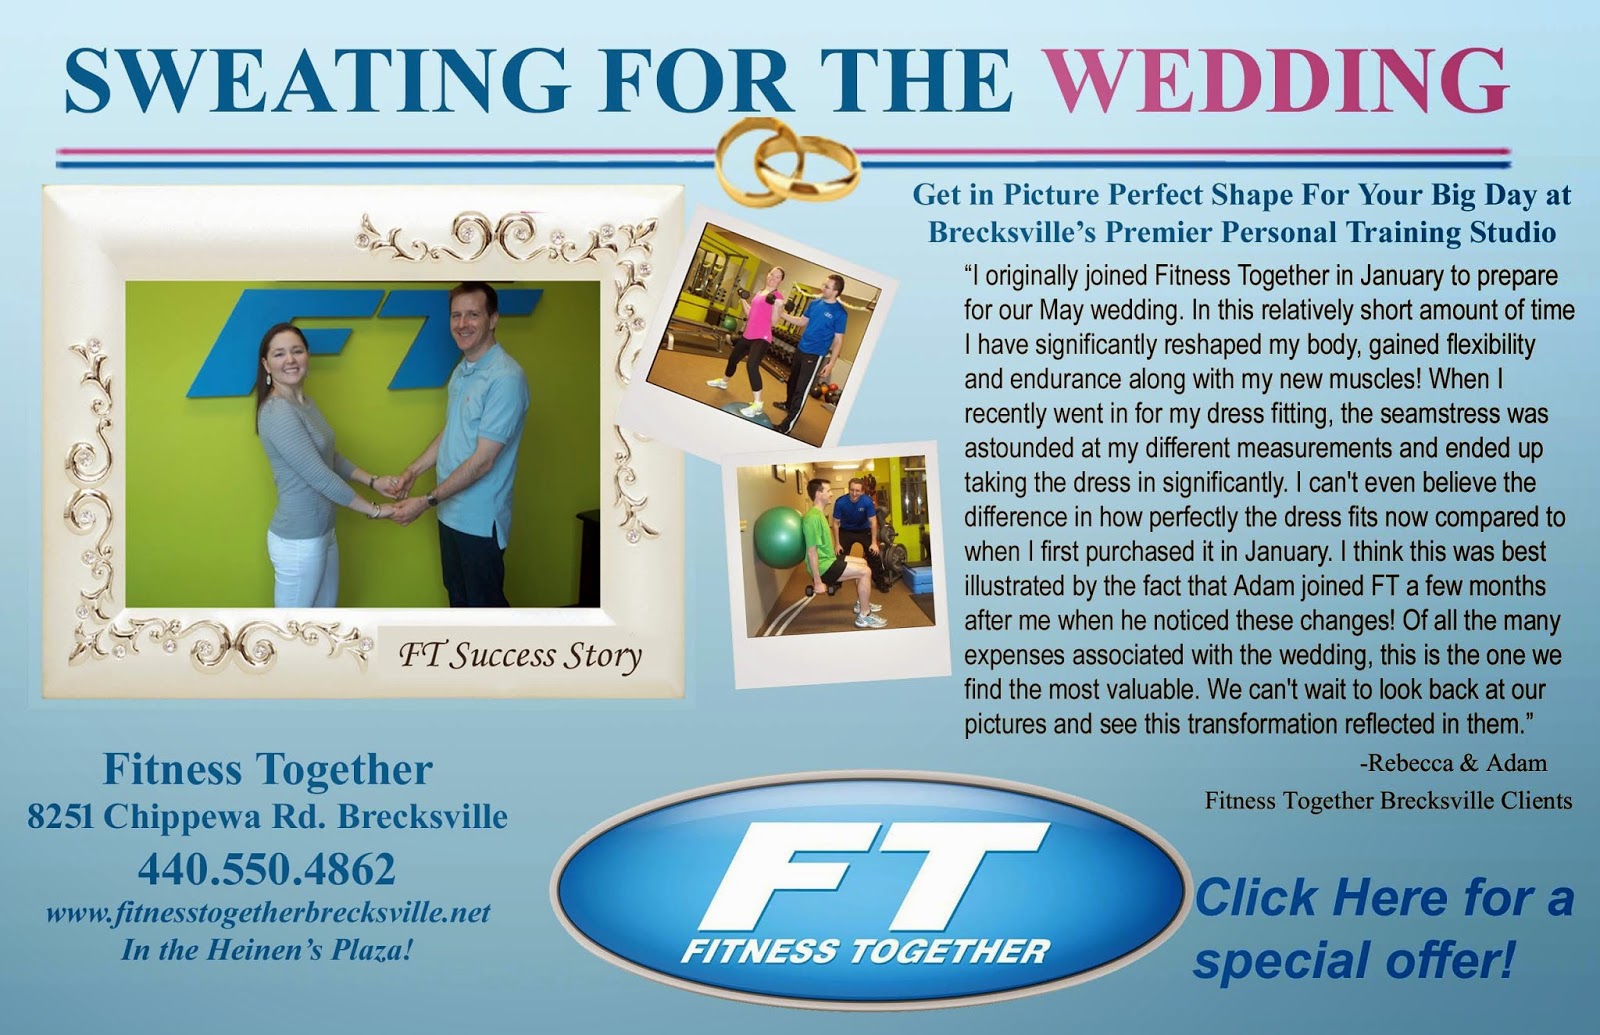 Http://www.fitnesstogether.com/brecksville/wedding